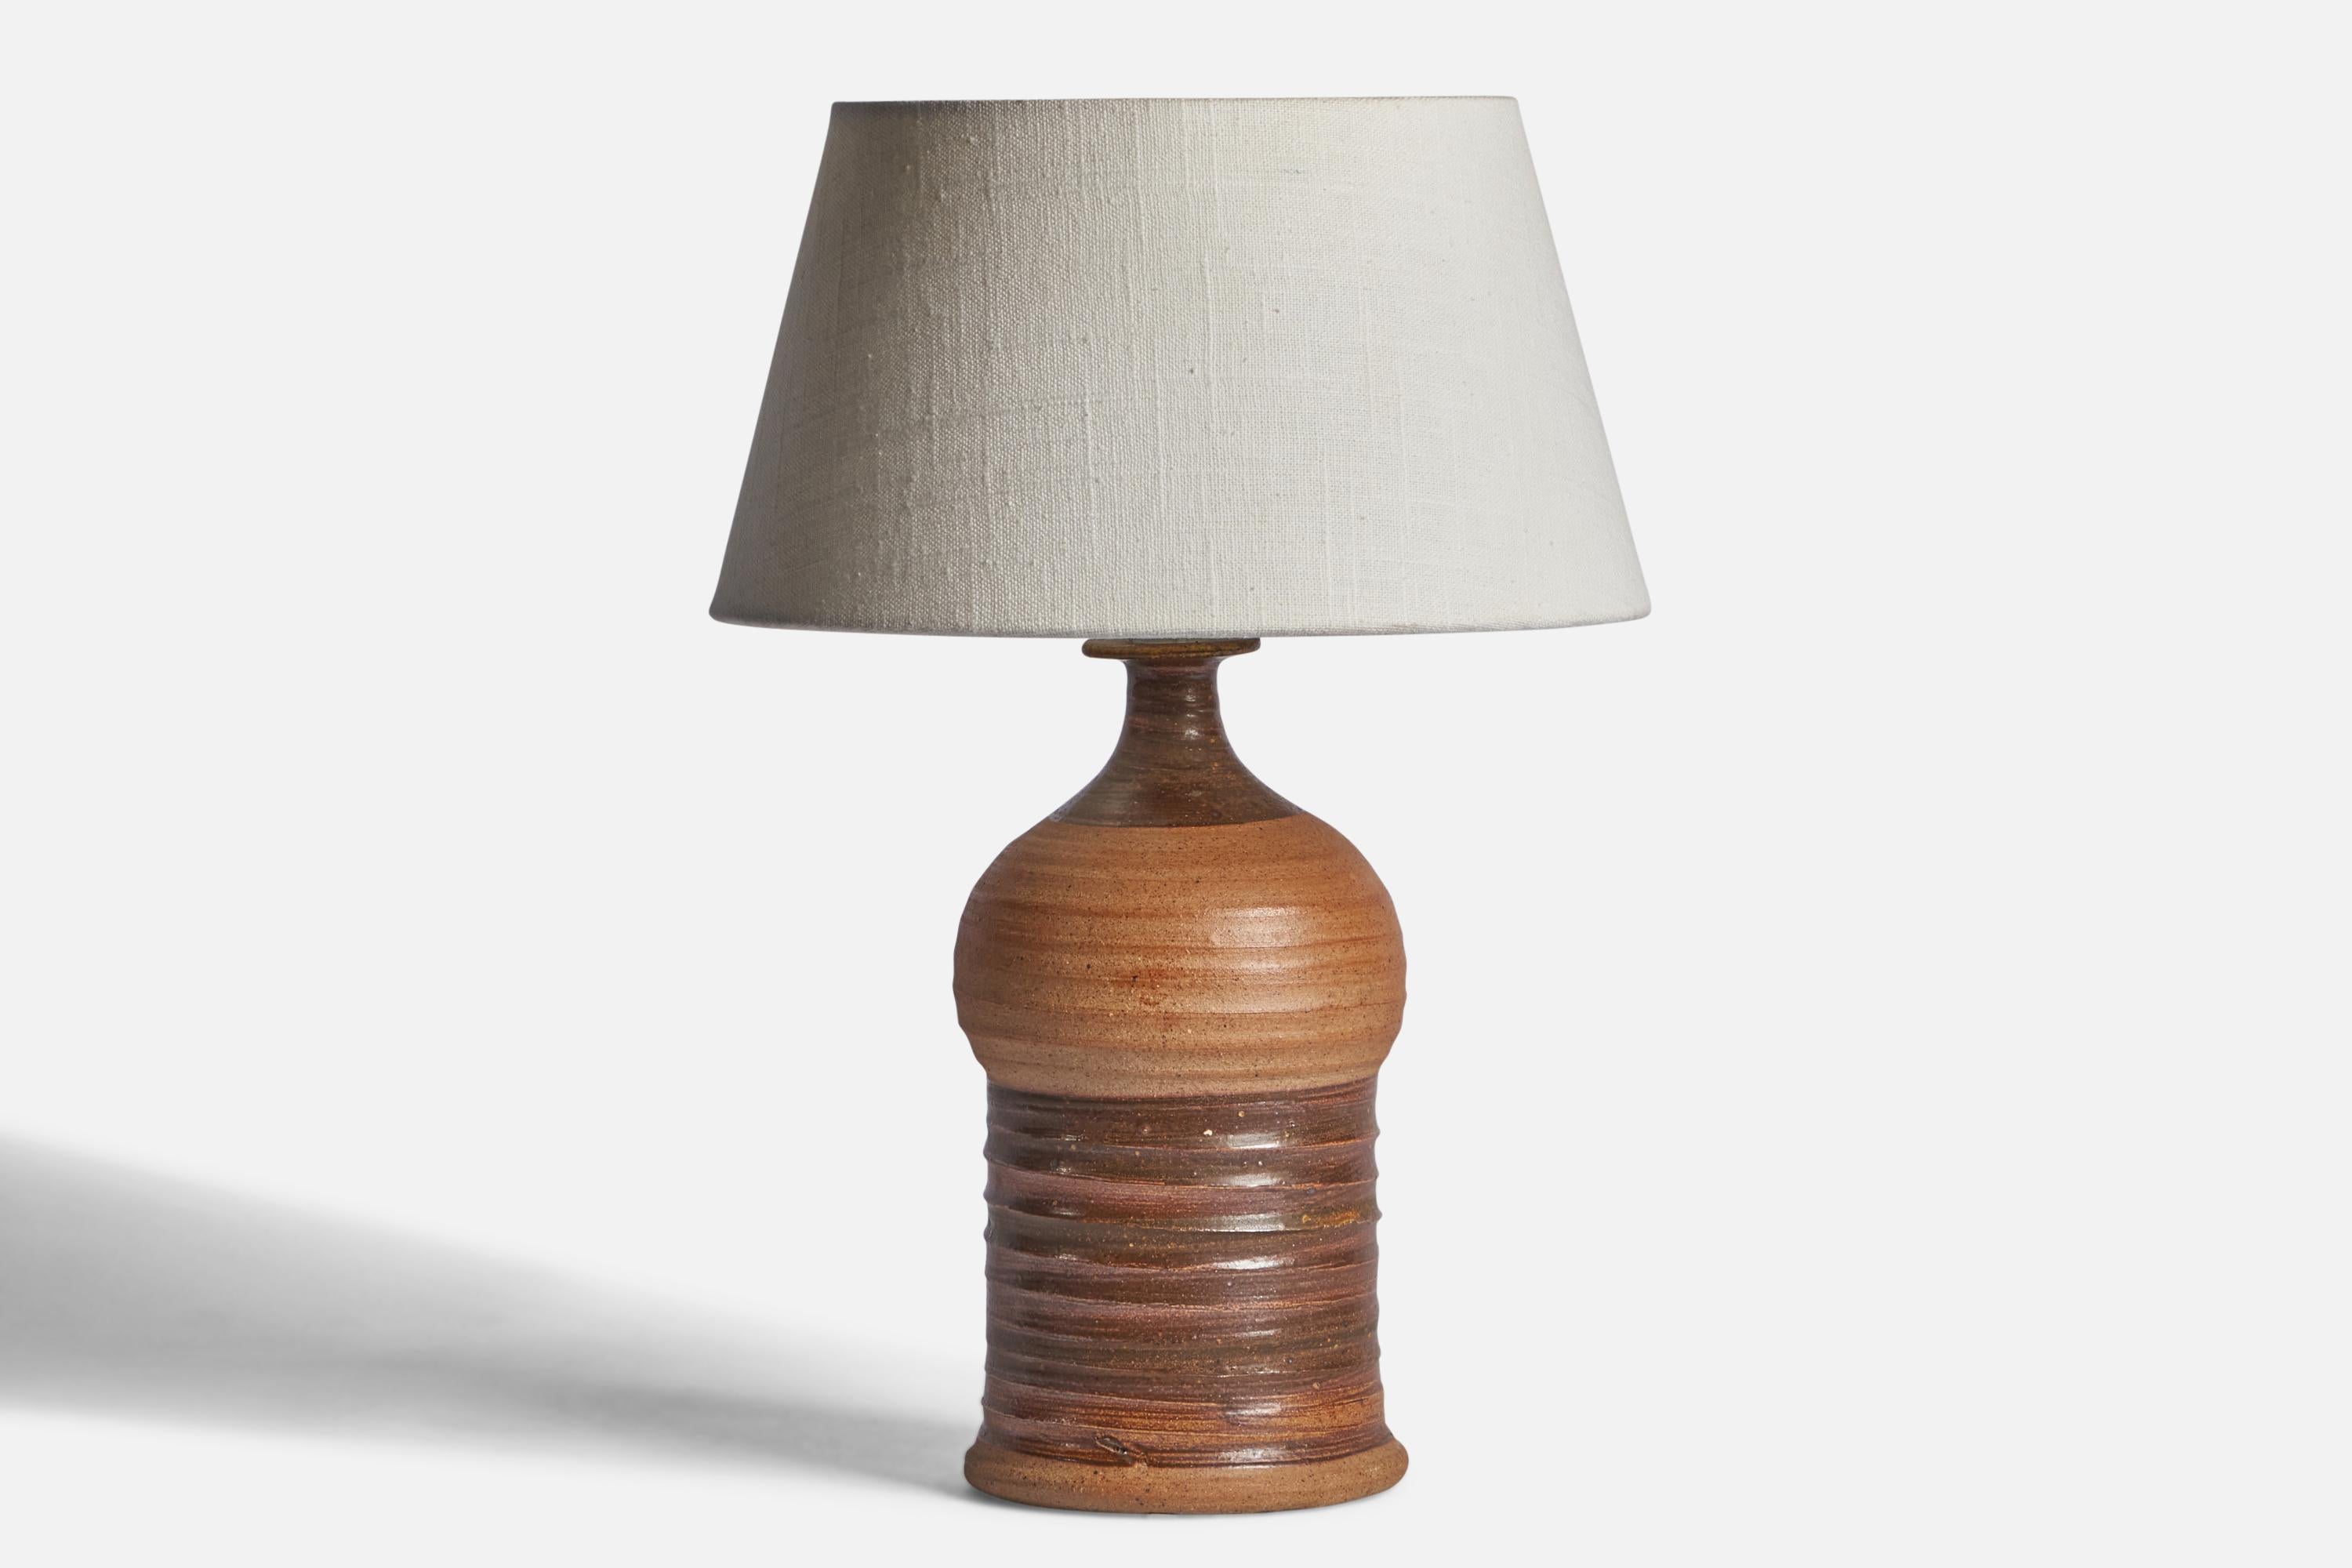 Tischlampe aus braun glasiertem Steingut, entworfen und hergestellt in Dänemark, um 1950.

Abmessungen der Lampe (Zoll): 11,65